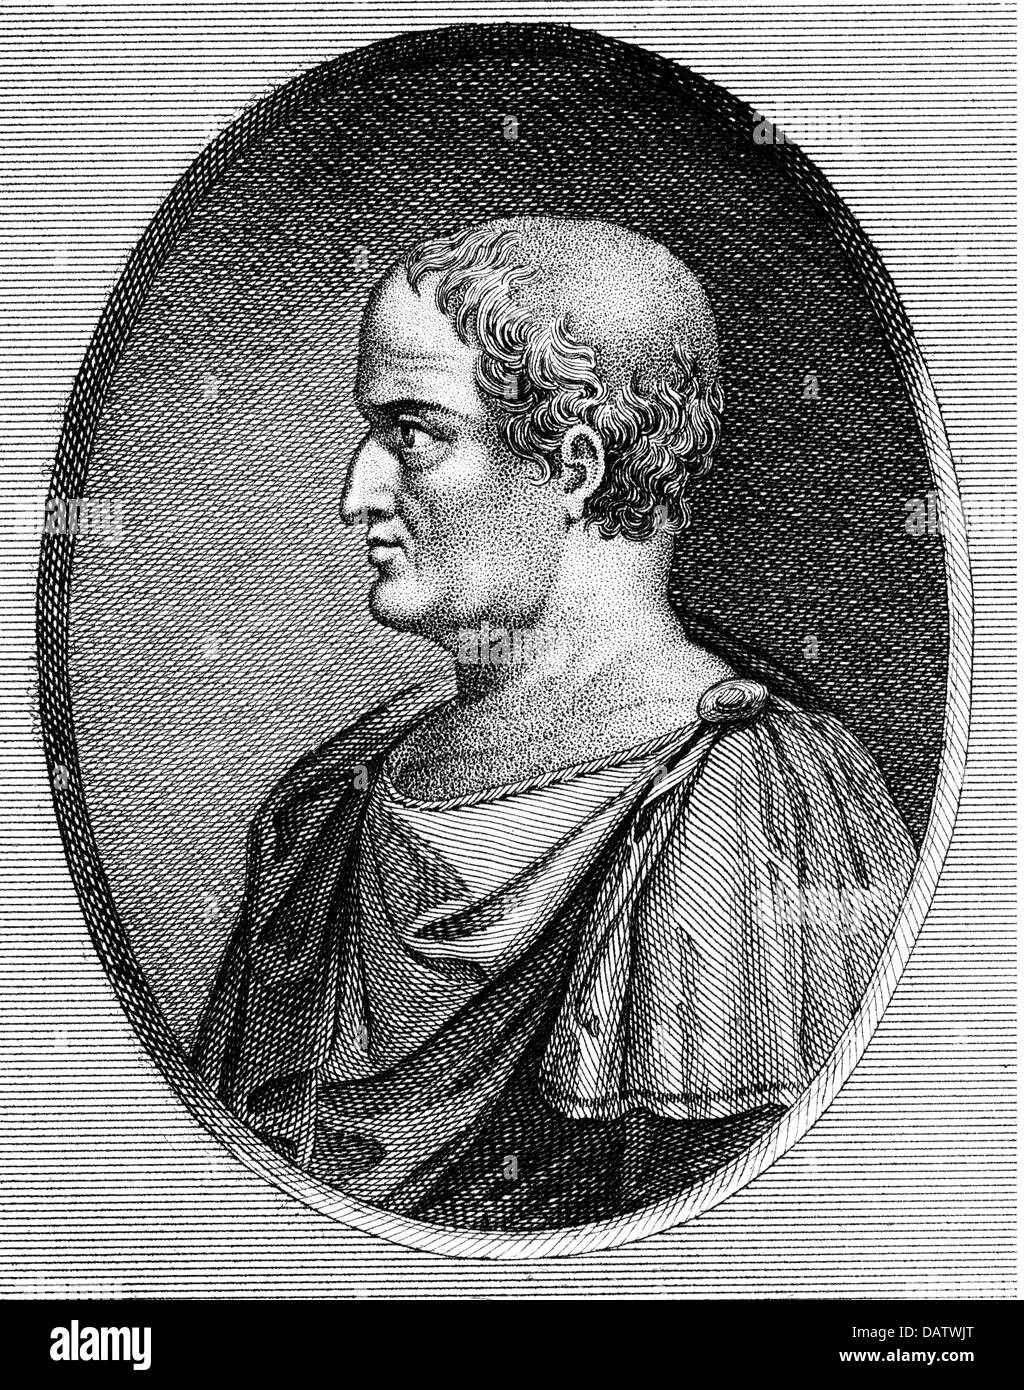 Solon, circa 640 - circa 560 BC, Attic politician, legislator, portrait, profile, copper engraving, circa 18th century, Artist's Copyright has not to be cleared Stock Photo